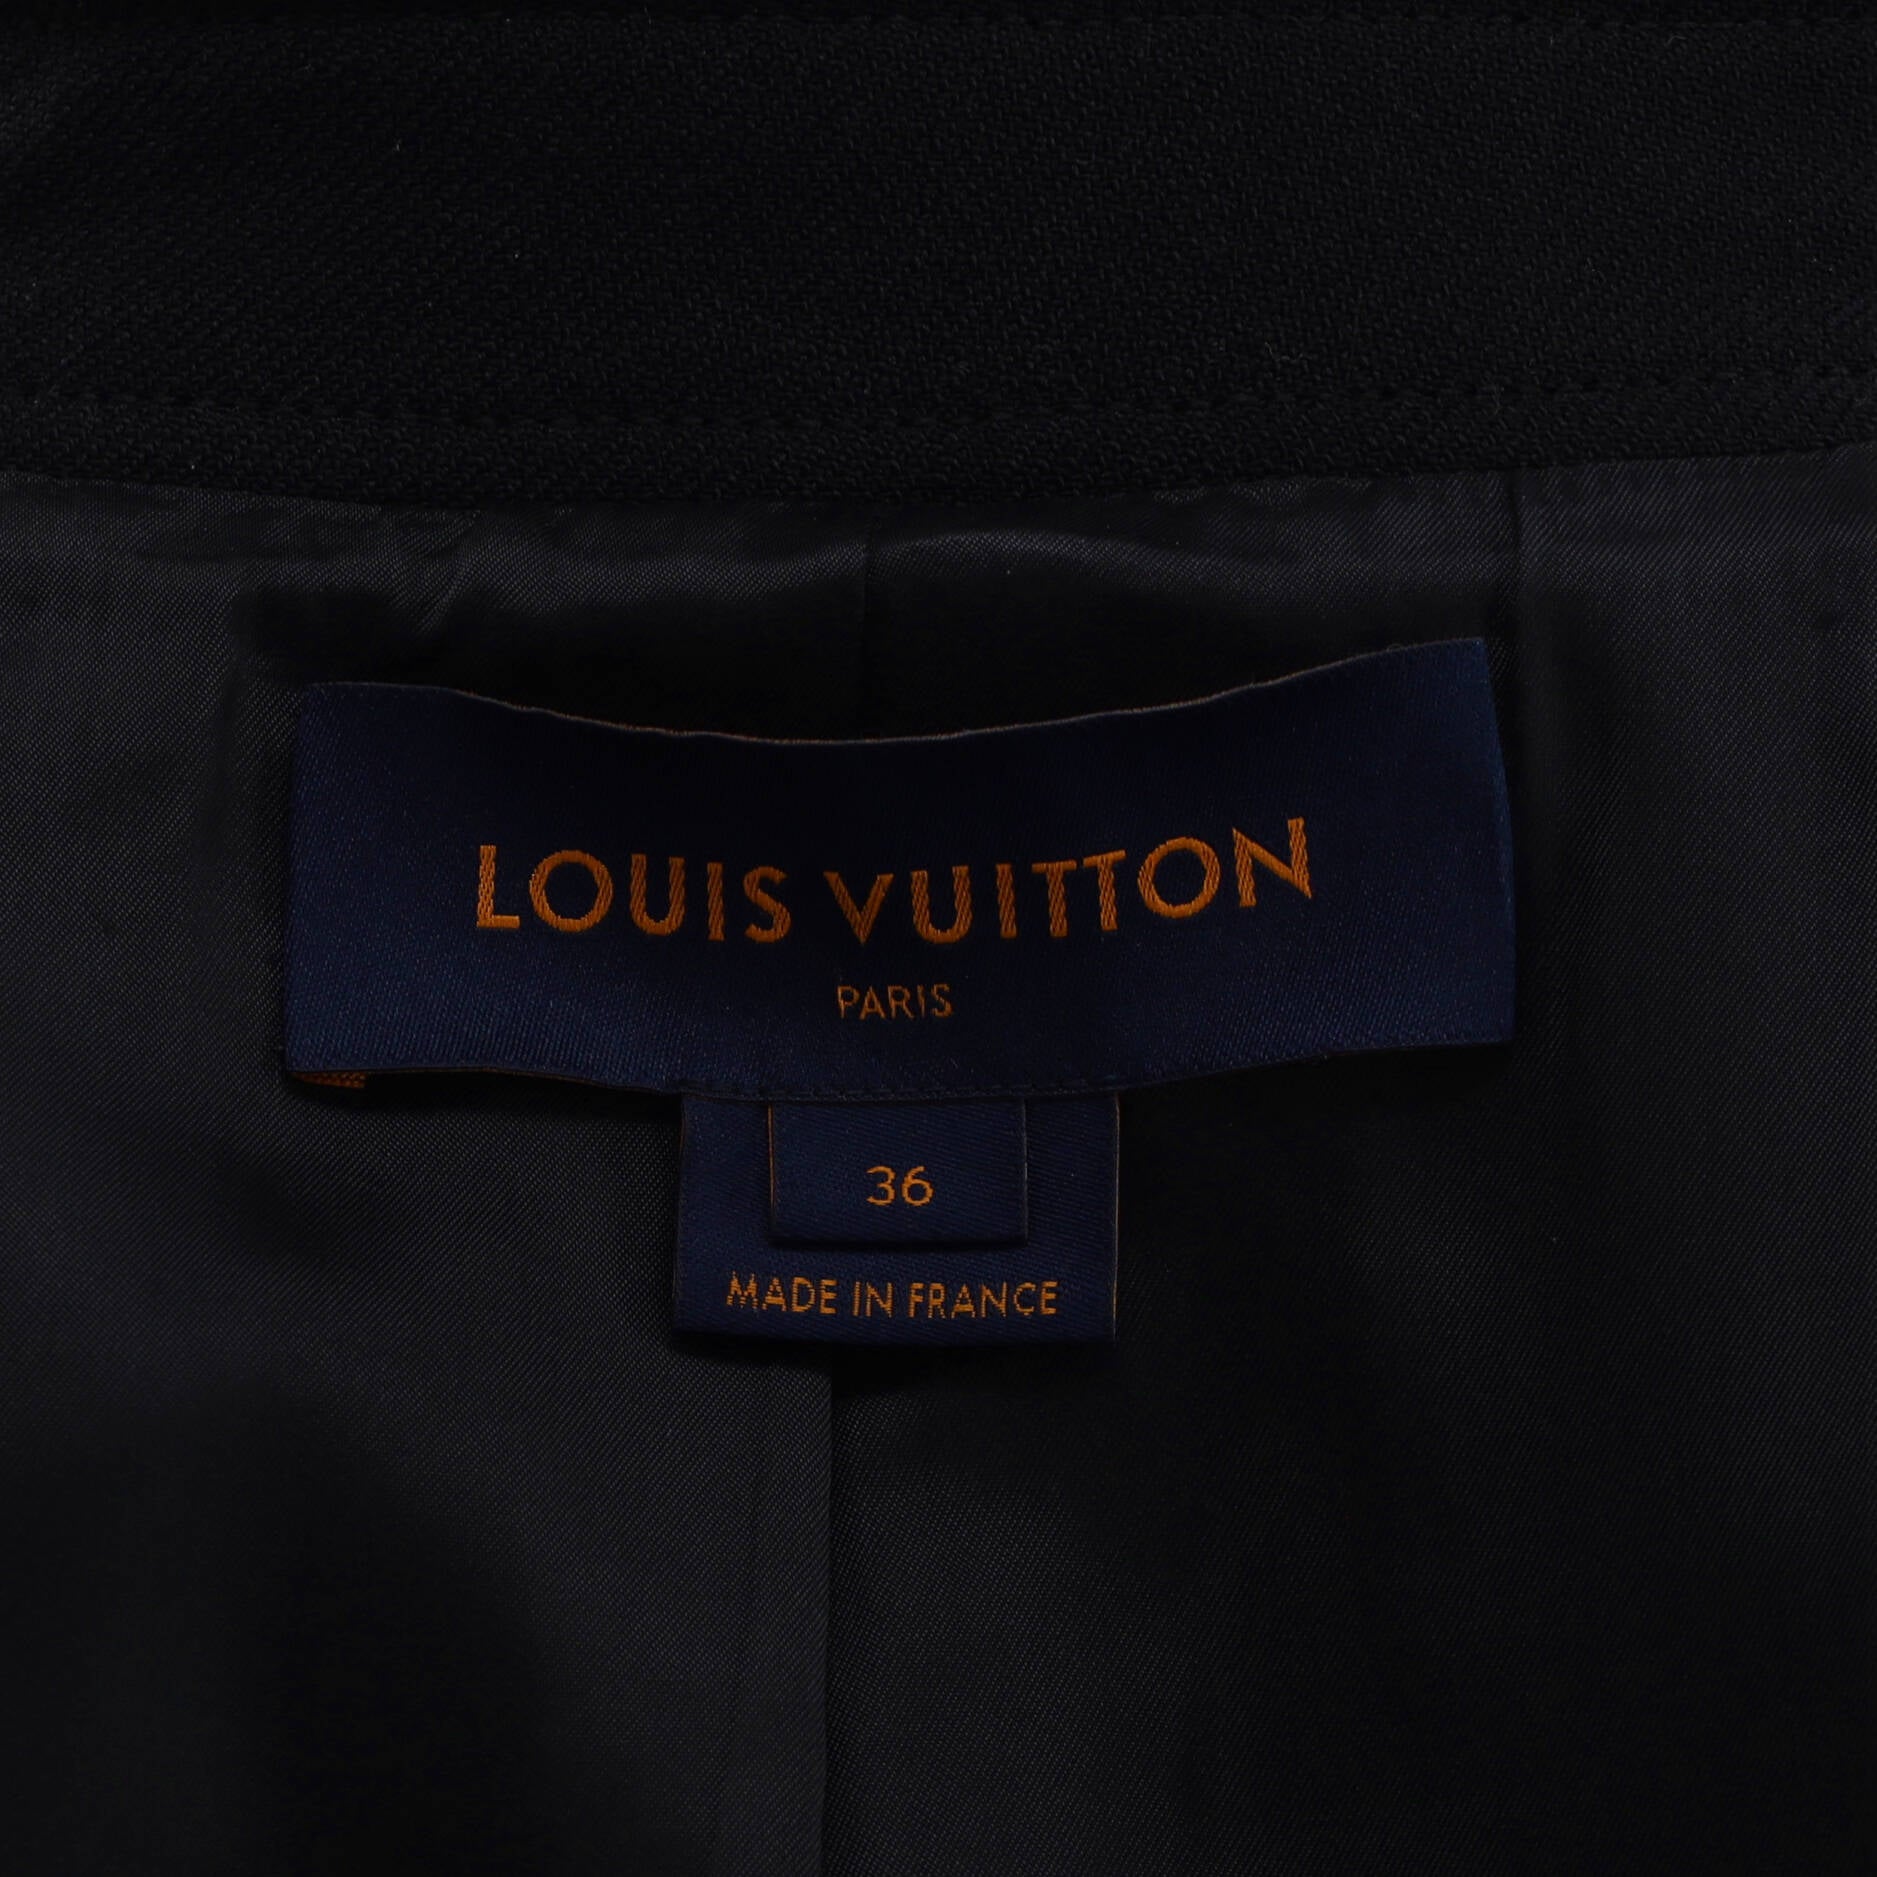 Louis Vuitton - Signature Hooded Wrap Coat - Bleu Nuit - Women - Size: 36 - Luxury